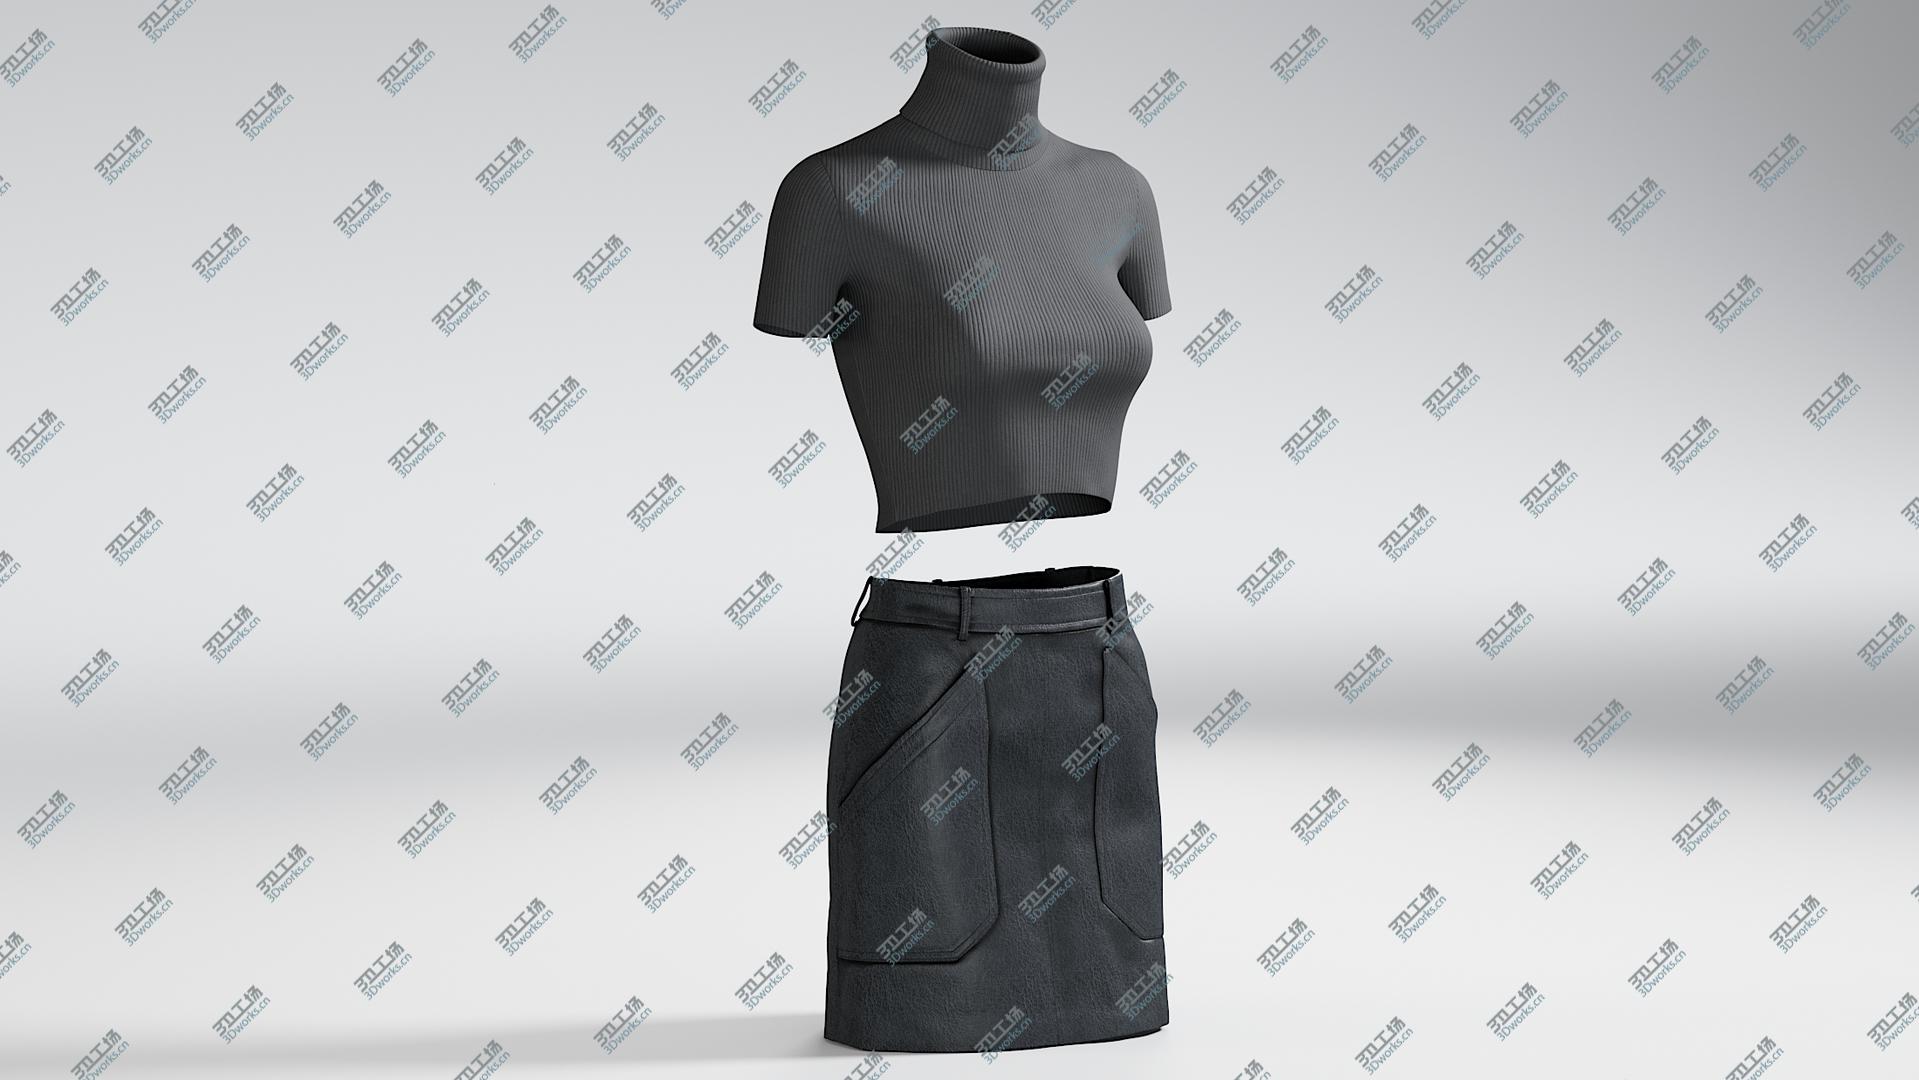 images/goods_img/202104091/Women's Skirt with TShirt 1 3D model/2.jpg